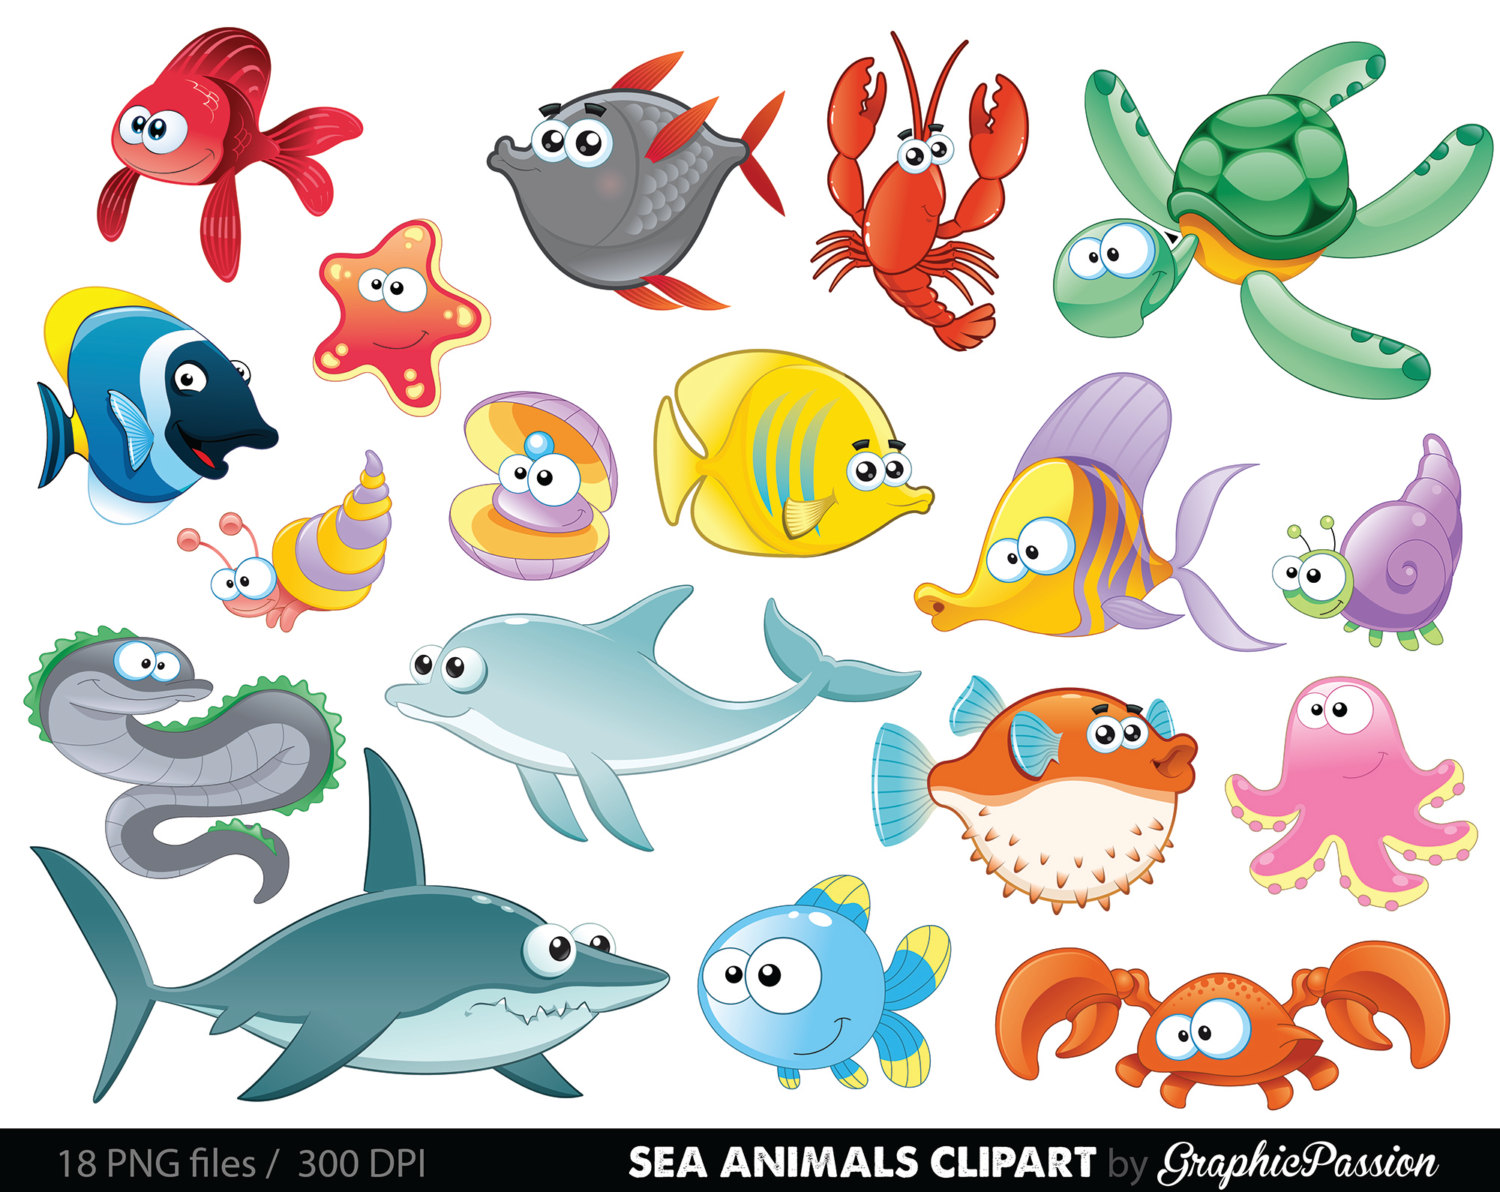 Sea animals clipart - Clipground